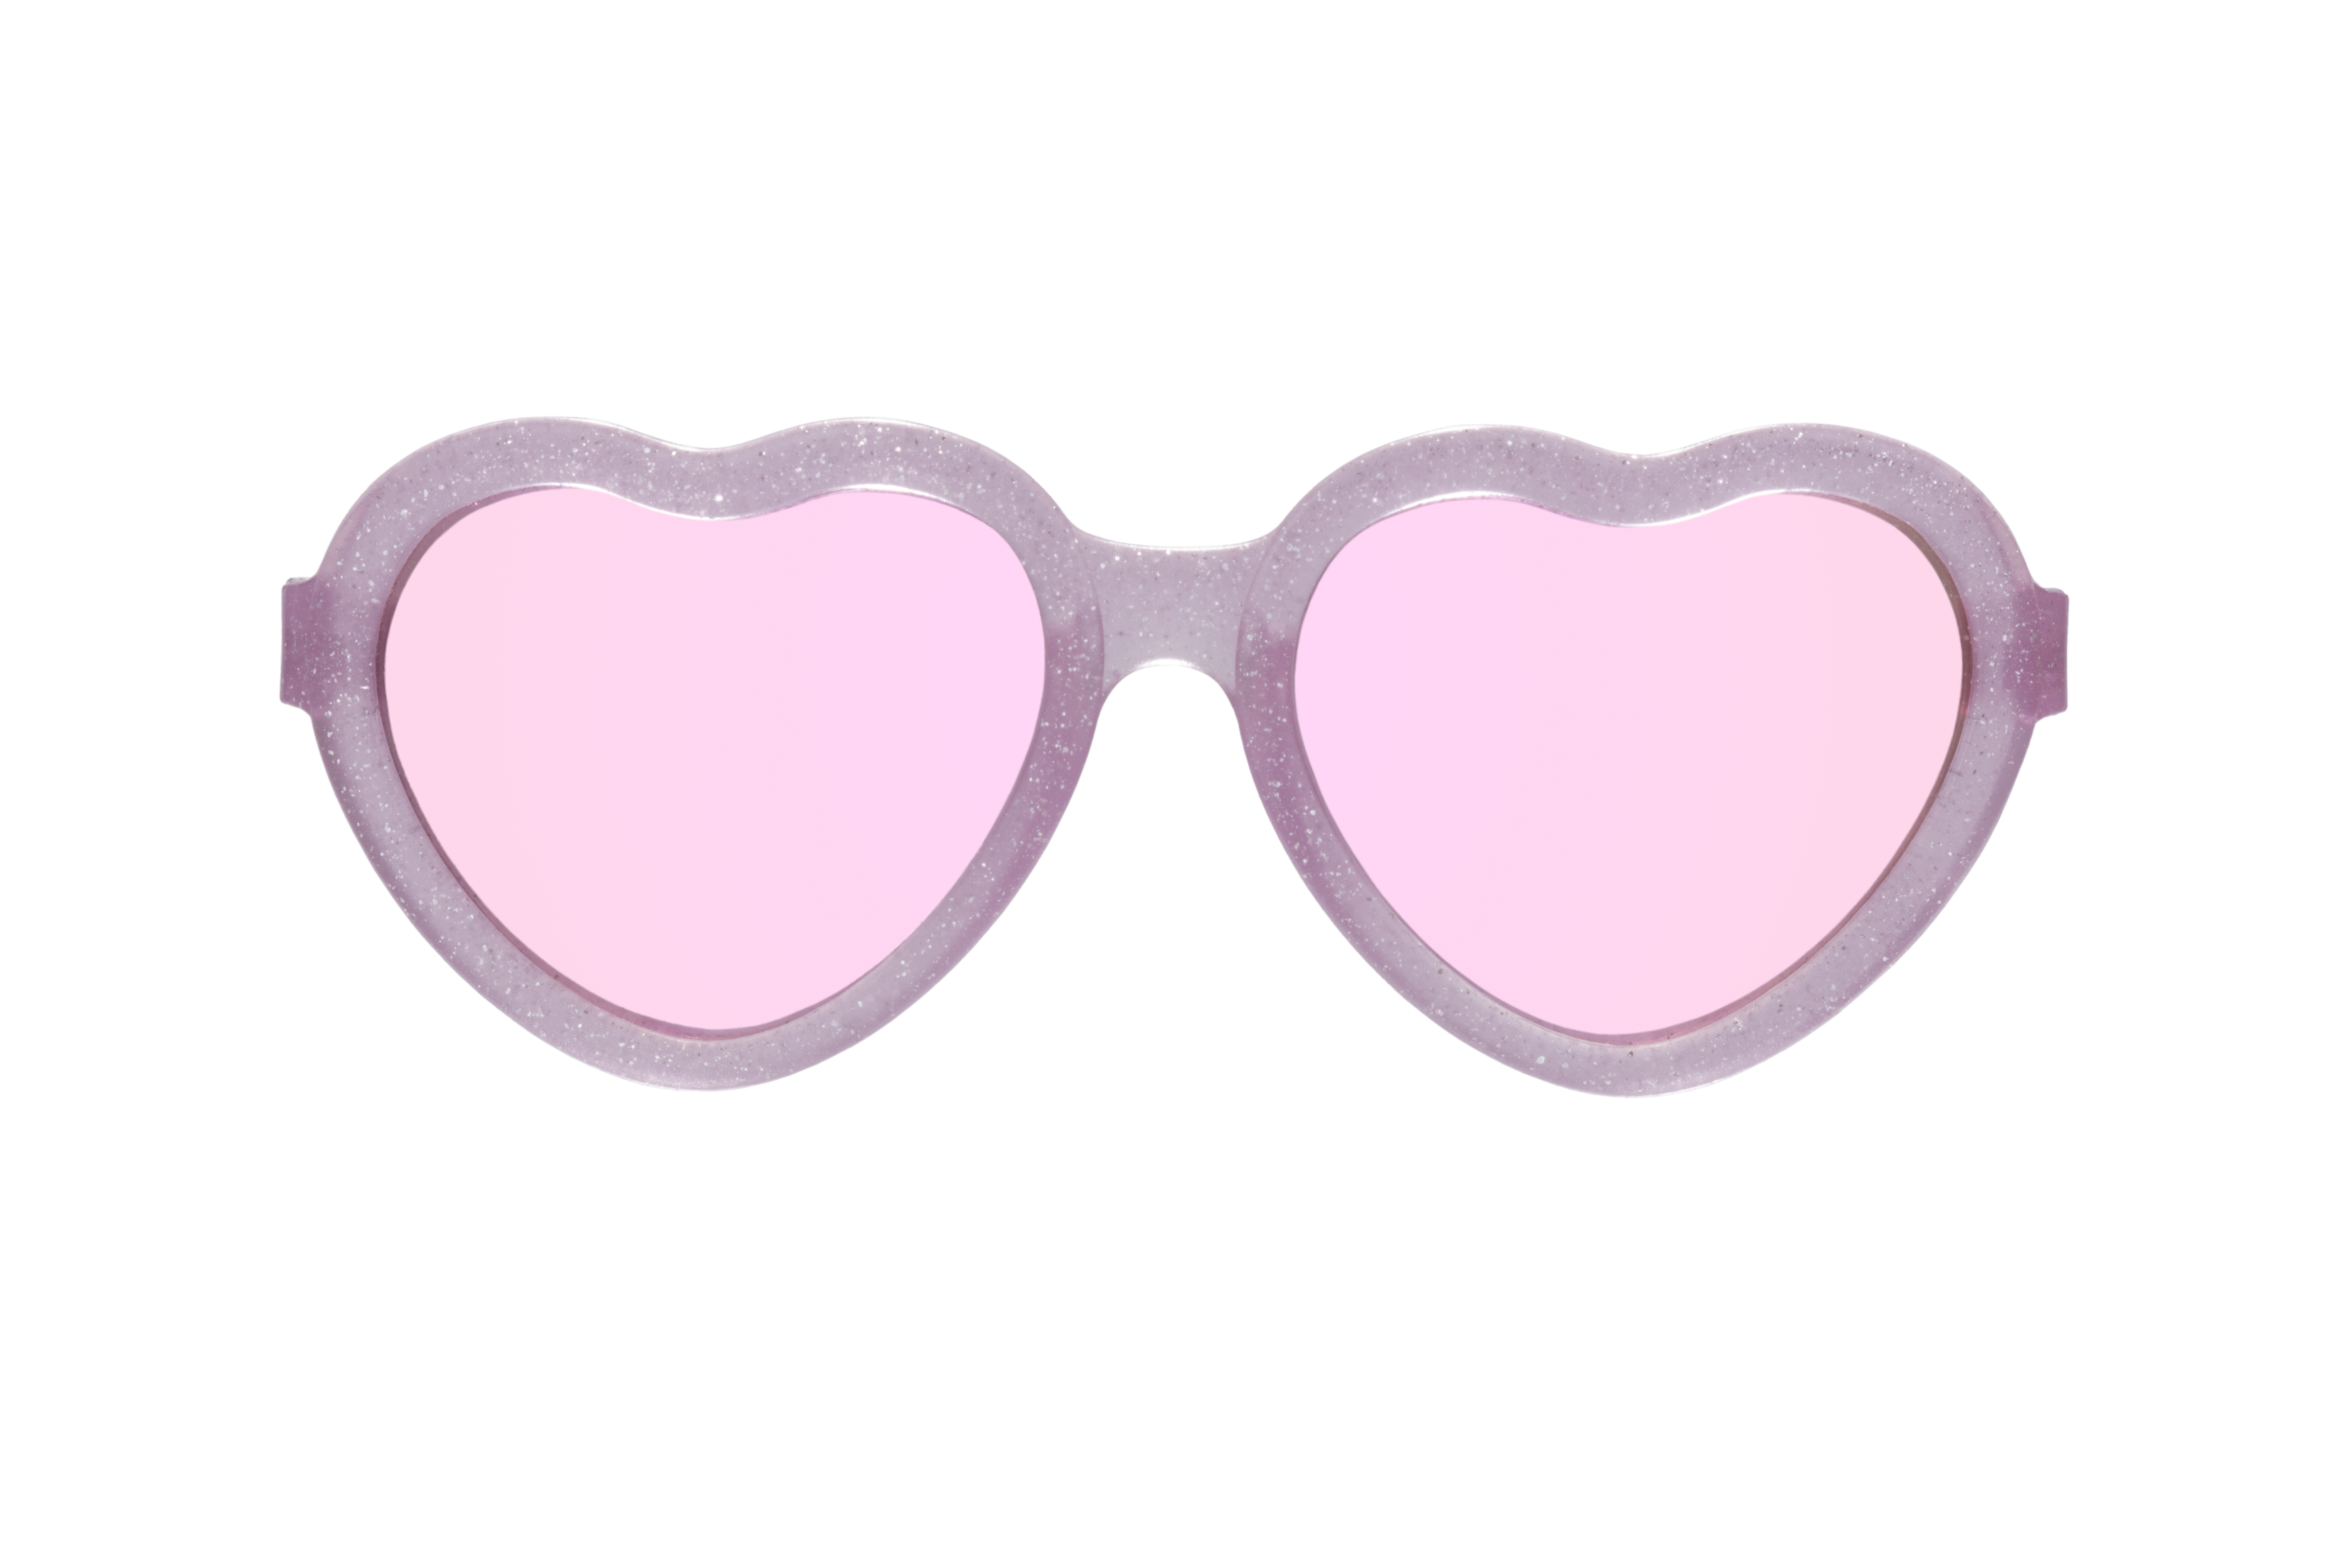 Babiators Original Hearts, sluneční brýle, růžové třpytky, 0-2 let